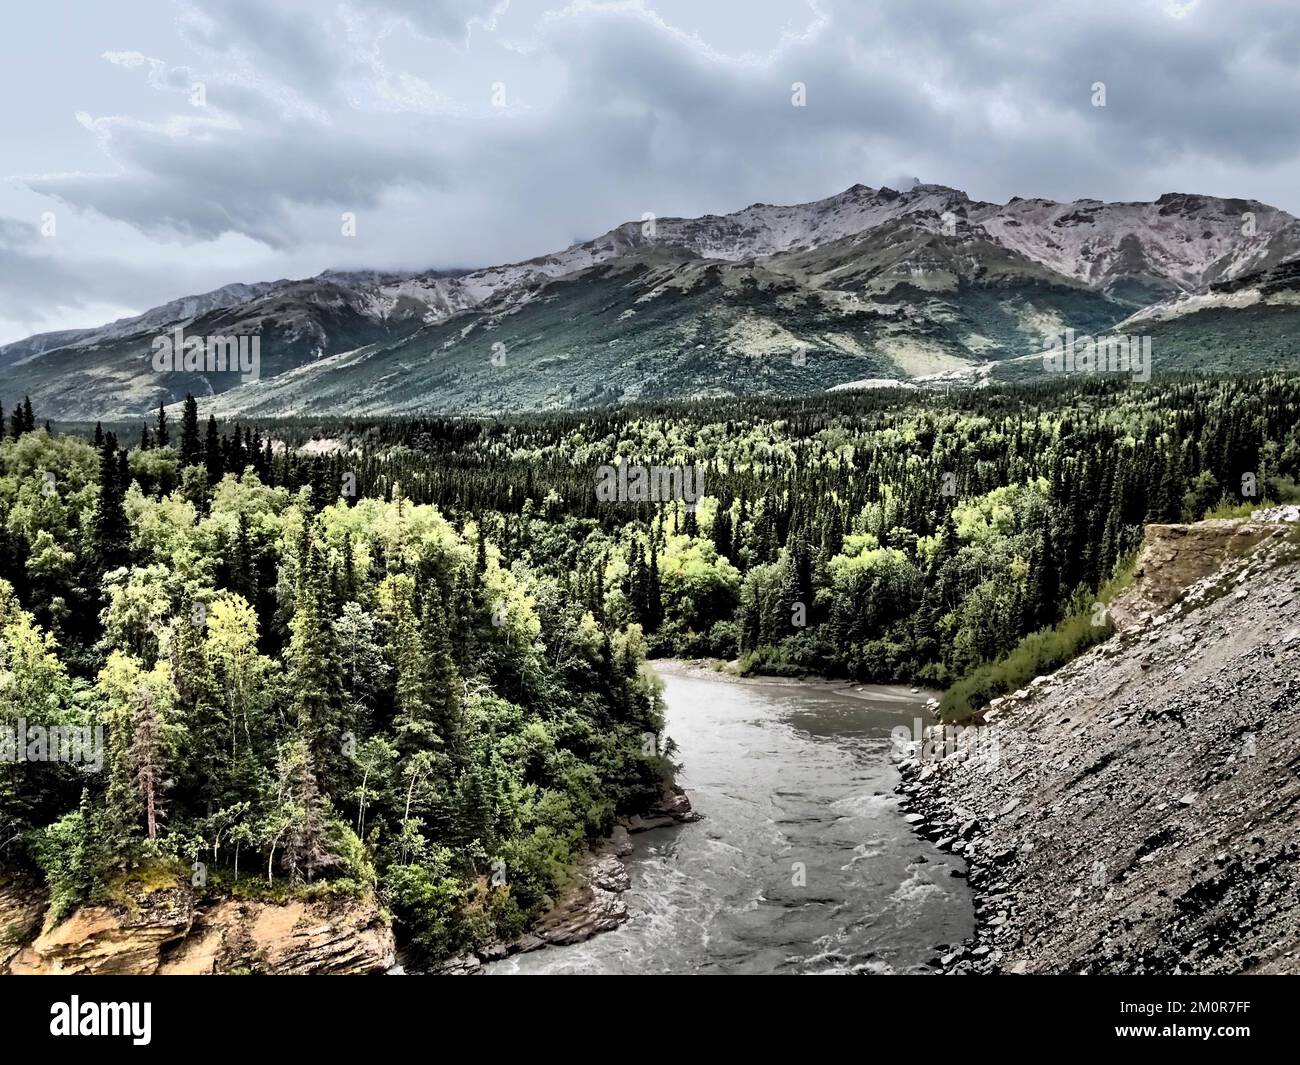 Alaska - fiume che attraversa la foresta, con una sporgenza rocciosa su un lato e montagne in lontananza, cielo cupo; manipolazione fotografica per effetto grafico Foto Stock